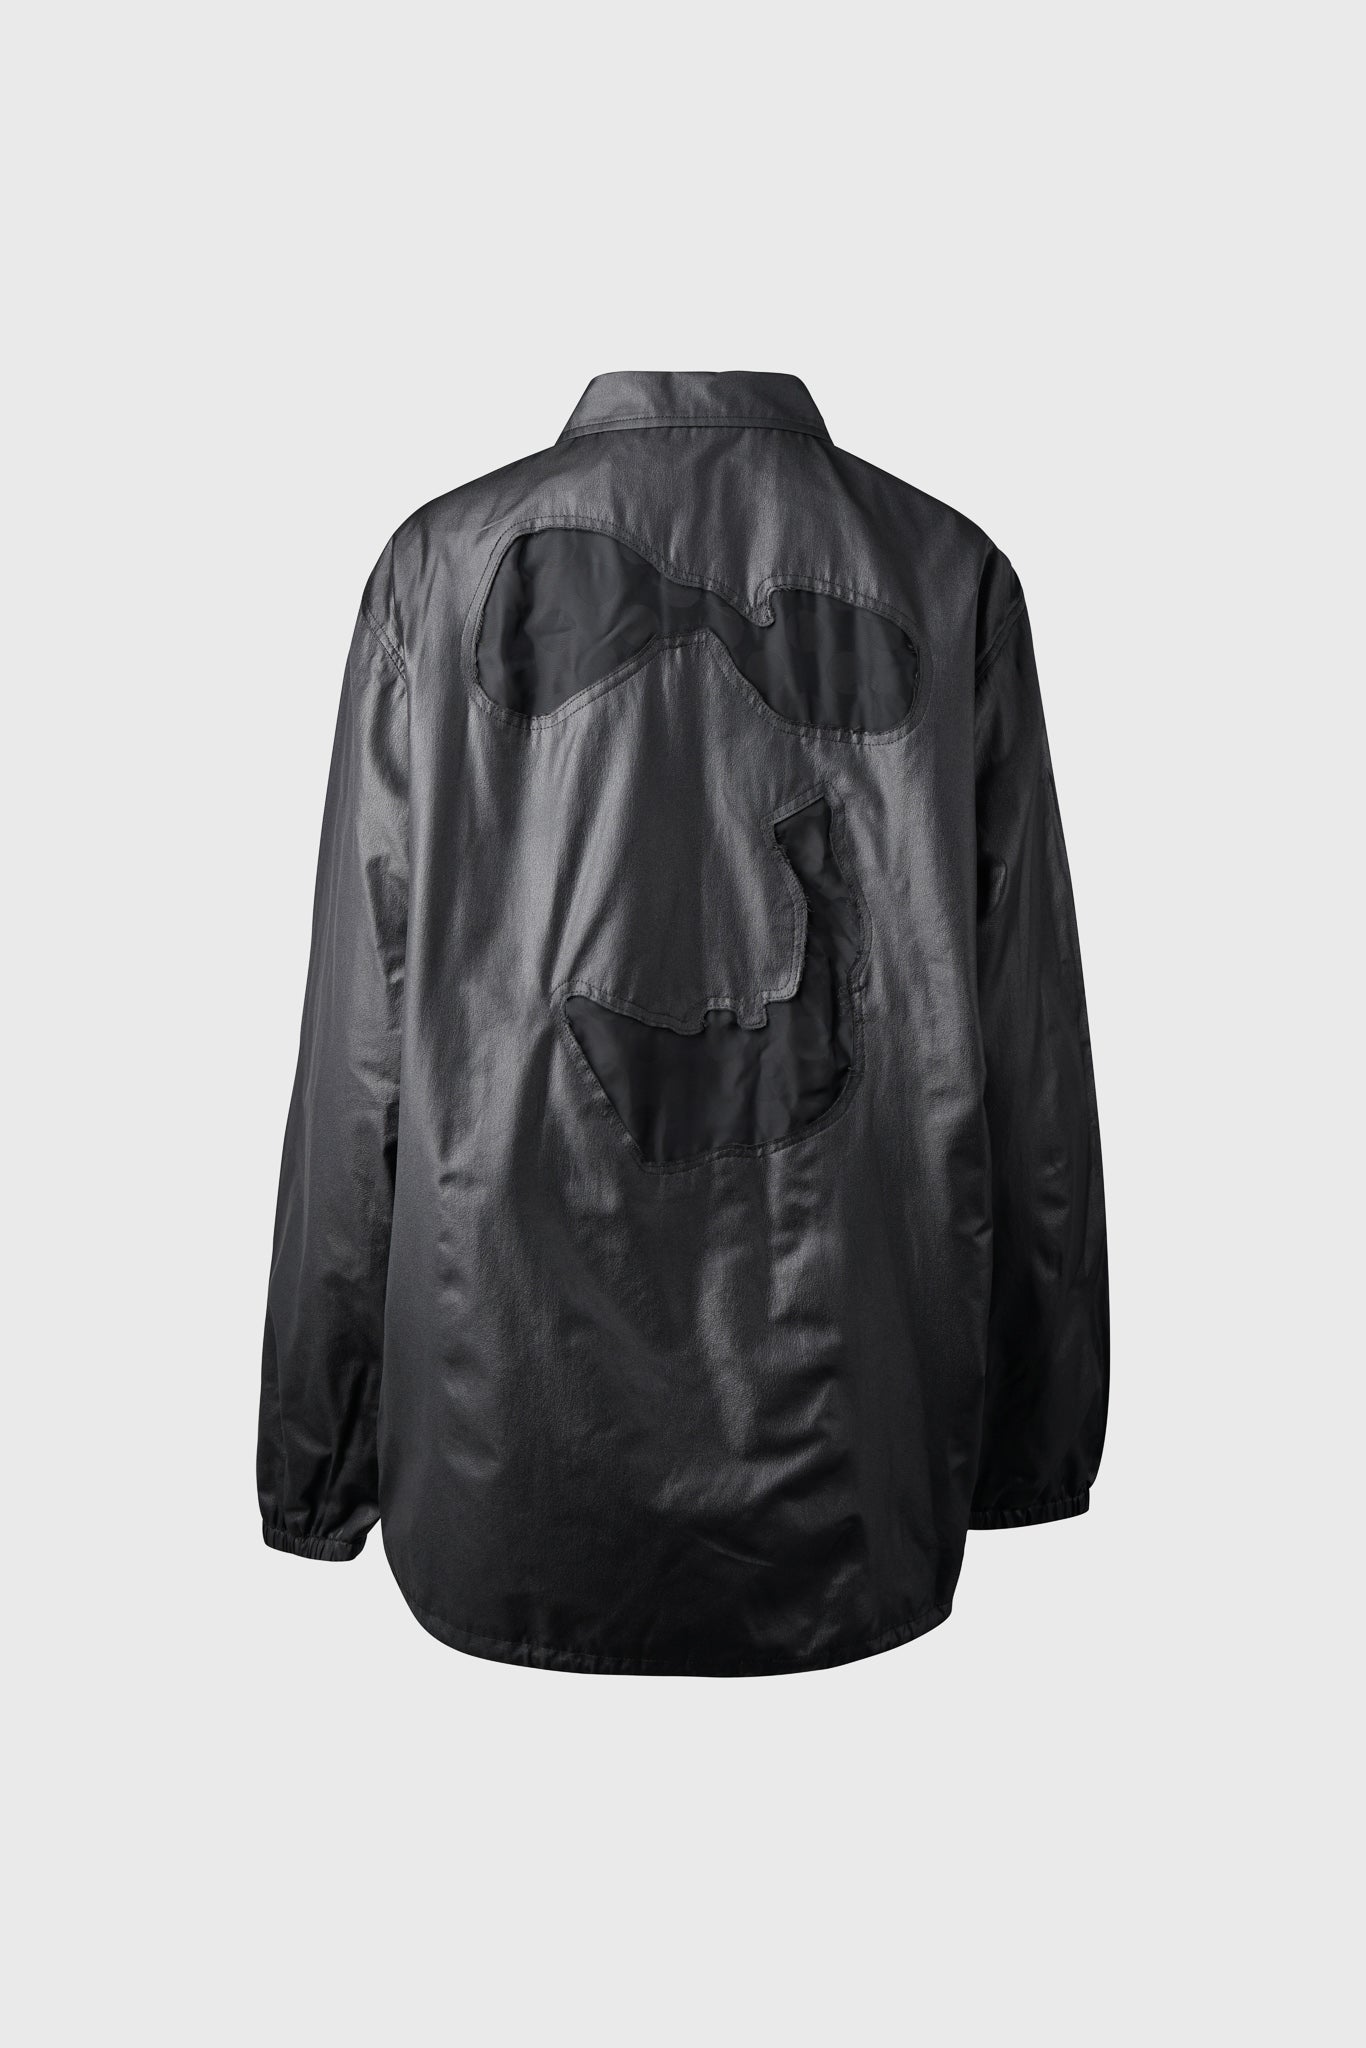 Selectshop FRAME - COMME DES GARÇONS BLACK Coach Jacket Outerwear Dubai